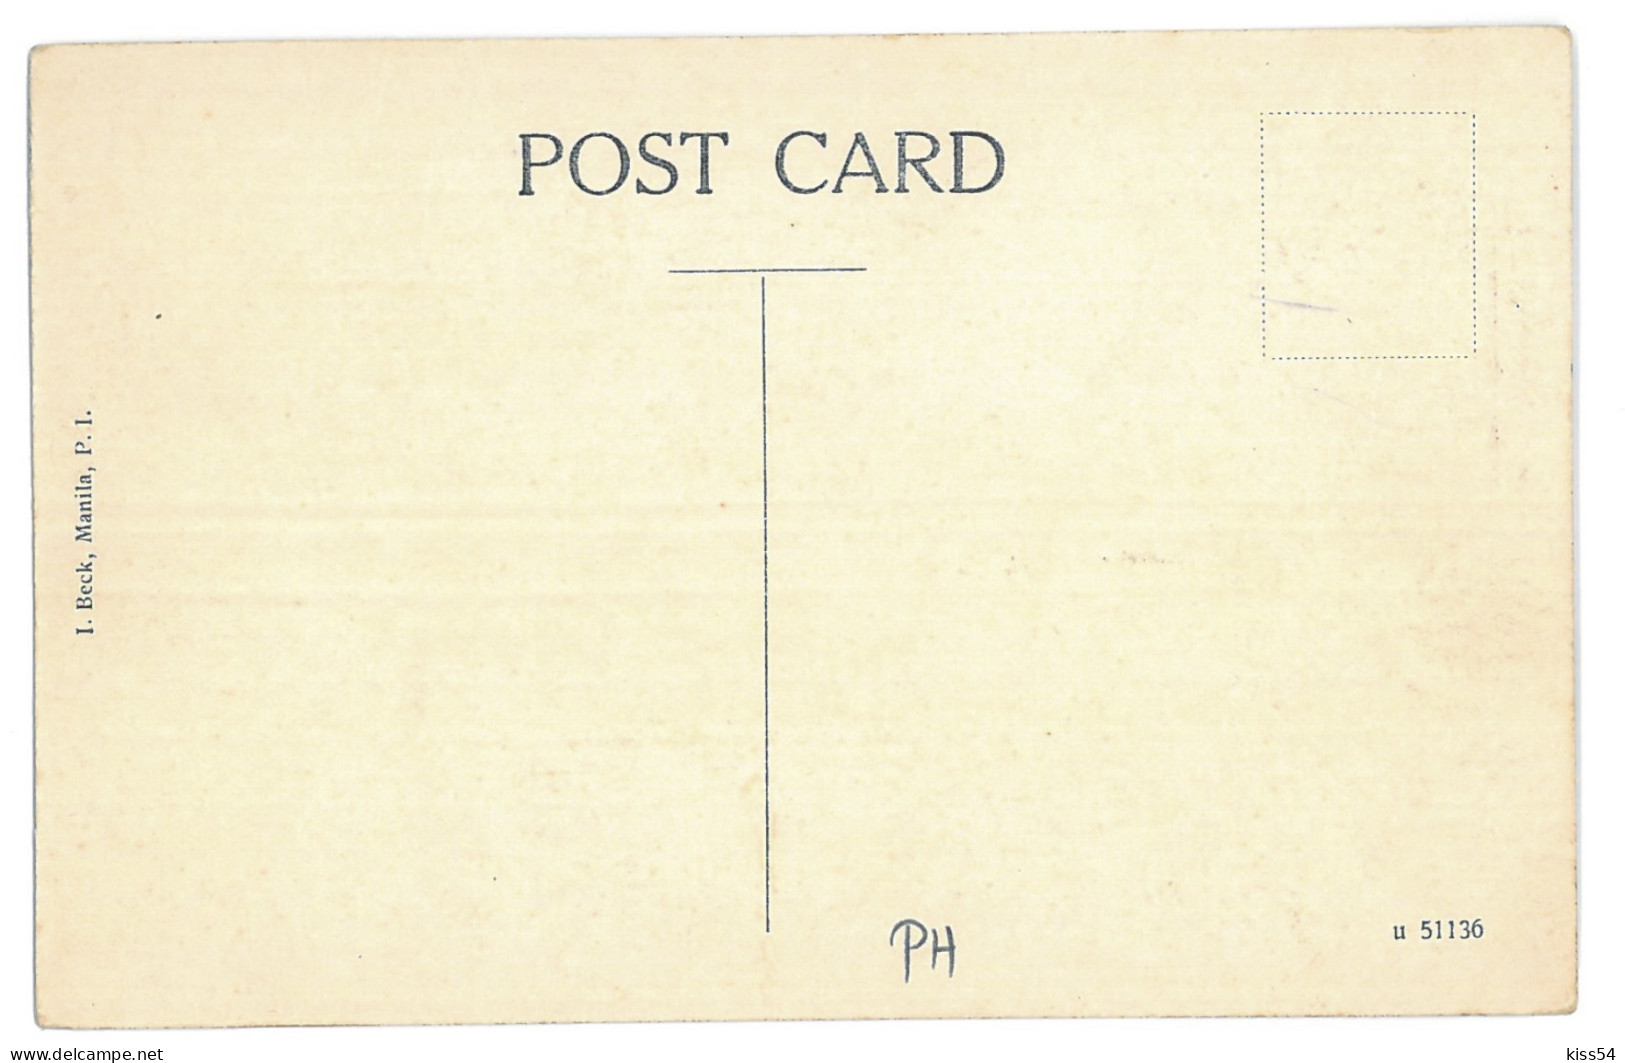 PH 2 - 12074 MANILA, Philippines, Fort Santiago - Old Postcard - Unused - Philippines